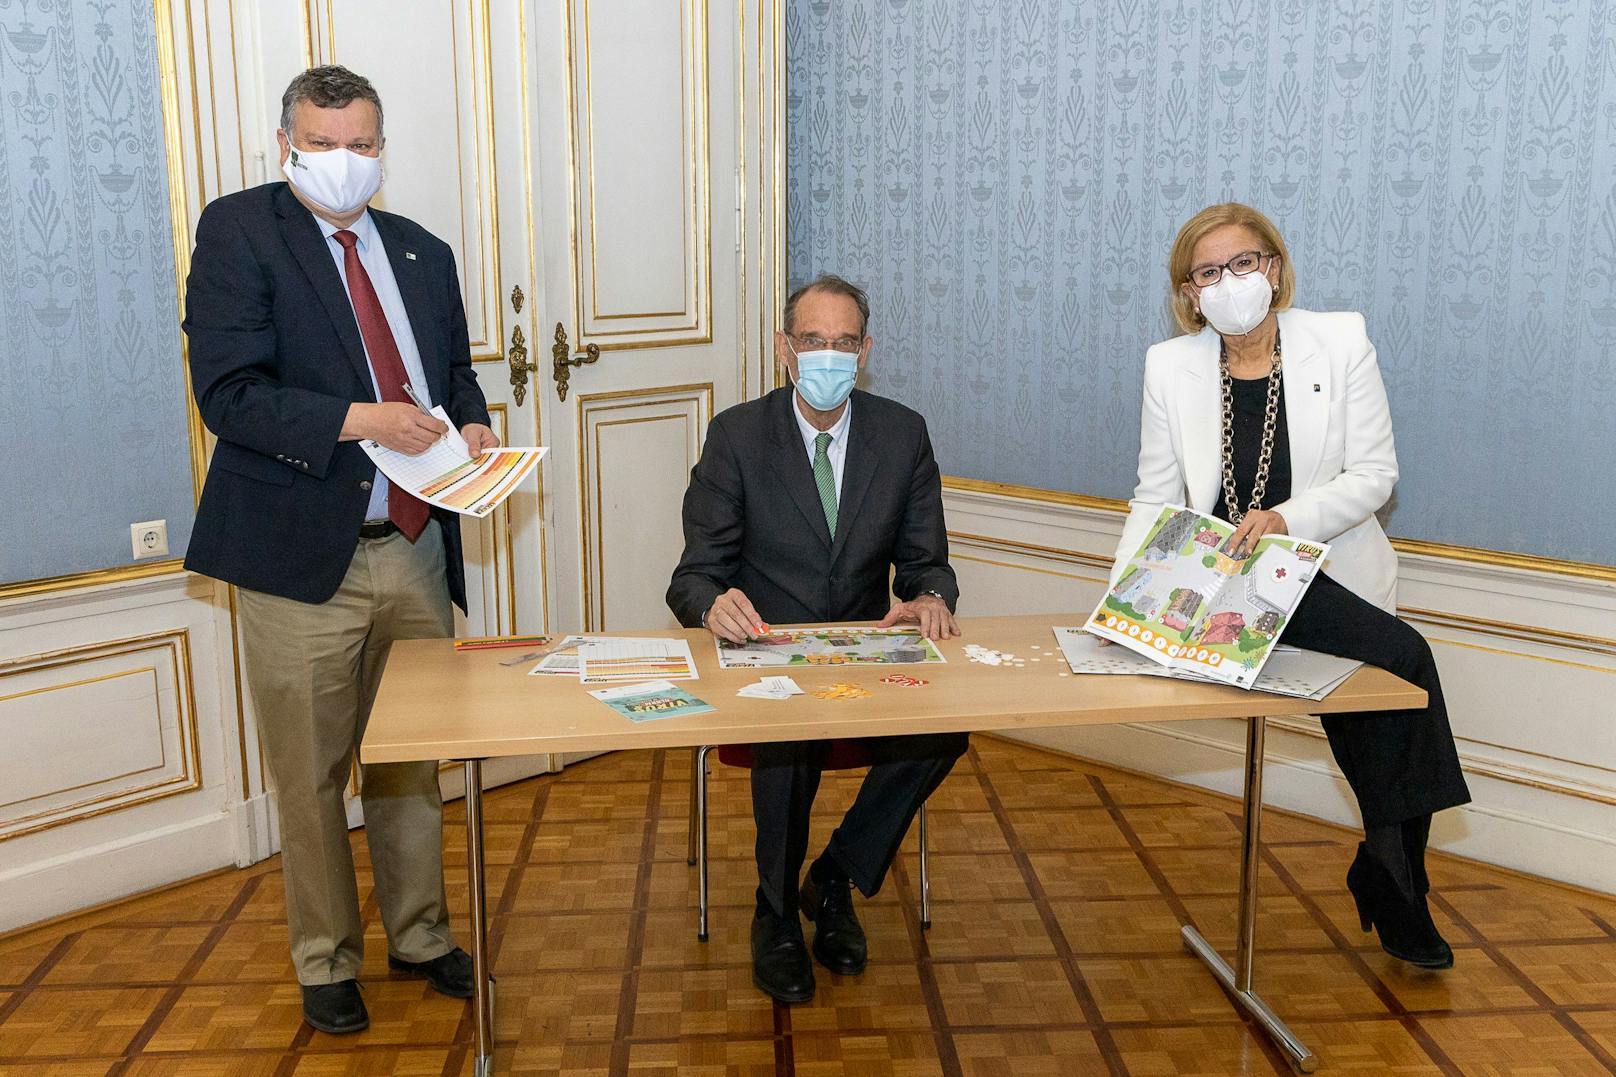 IST Austria Präsident Tom Henzinger, Landeshauptfrau Johanna Mikl-Leitner und BM Heinz Faßmann spielen "Virusalarm in Bleibhausen". Die Fotos wurden vor dem Lockdown aufgenommen.